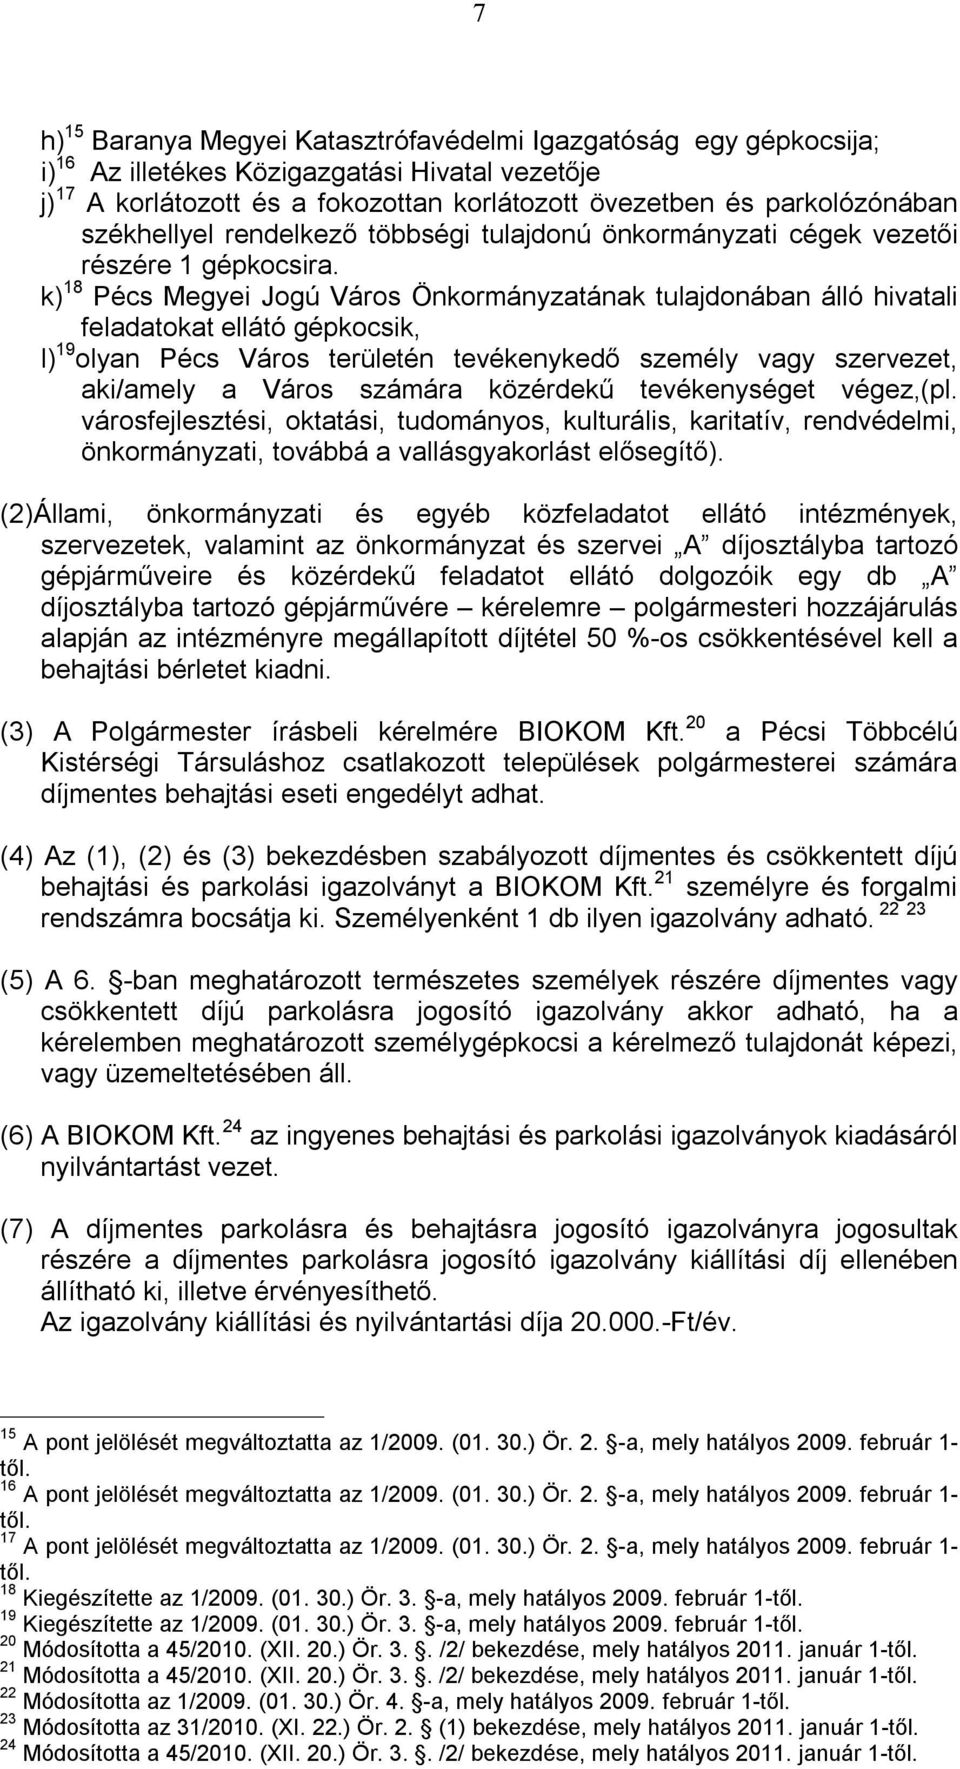 k) 18 Pécs Megyei Jogú Város Önkormányzatának tulajdonában álló hivatali feladatokat ellátó gépkocsik, l) 19 olyan Pécs Város területén tevékenykedő személy vagy szervezet, aki/amely a Város számára